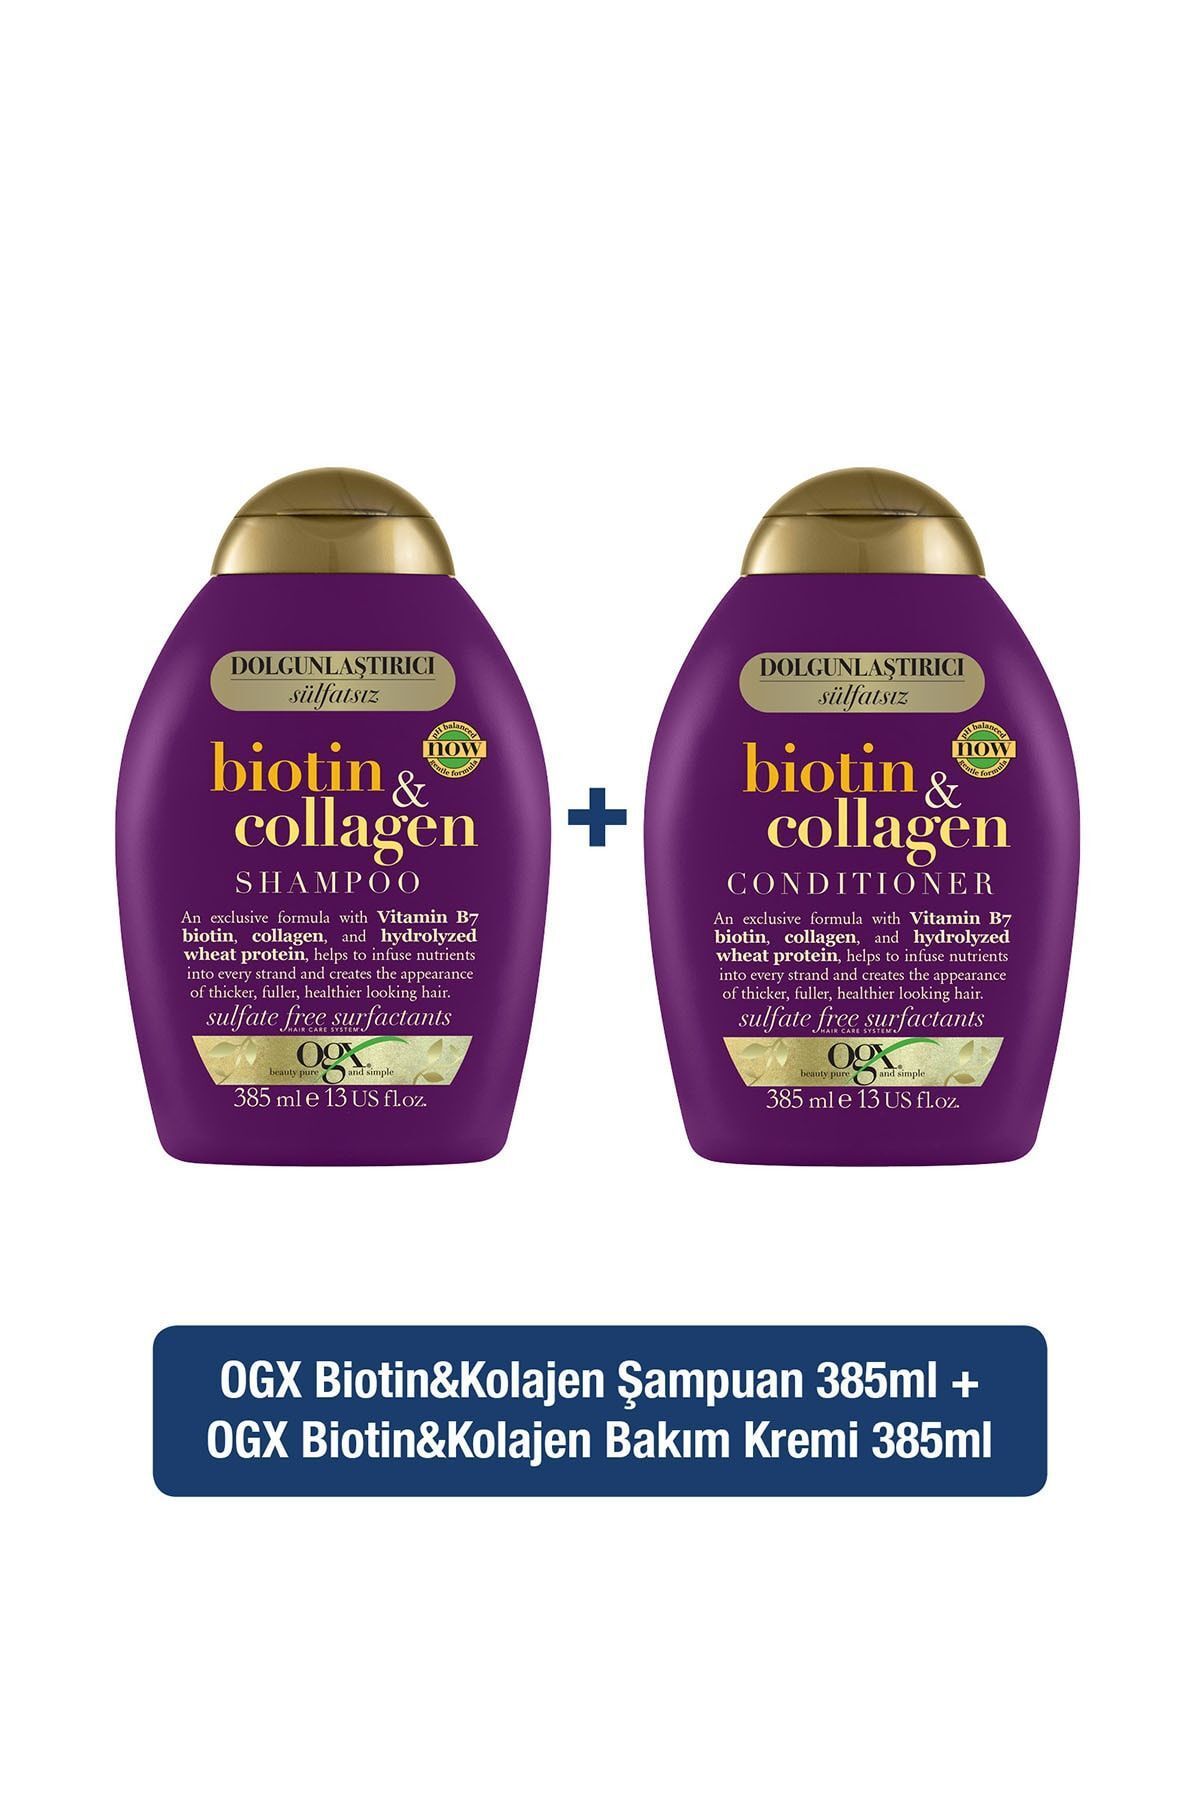 OGX Dolgunlaştırıcı Biotin & Collagen Şampuan 385 ml Saç Bakım Kremi 385 ml Hediyeli